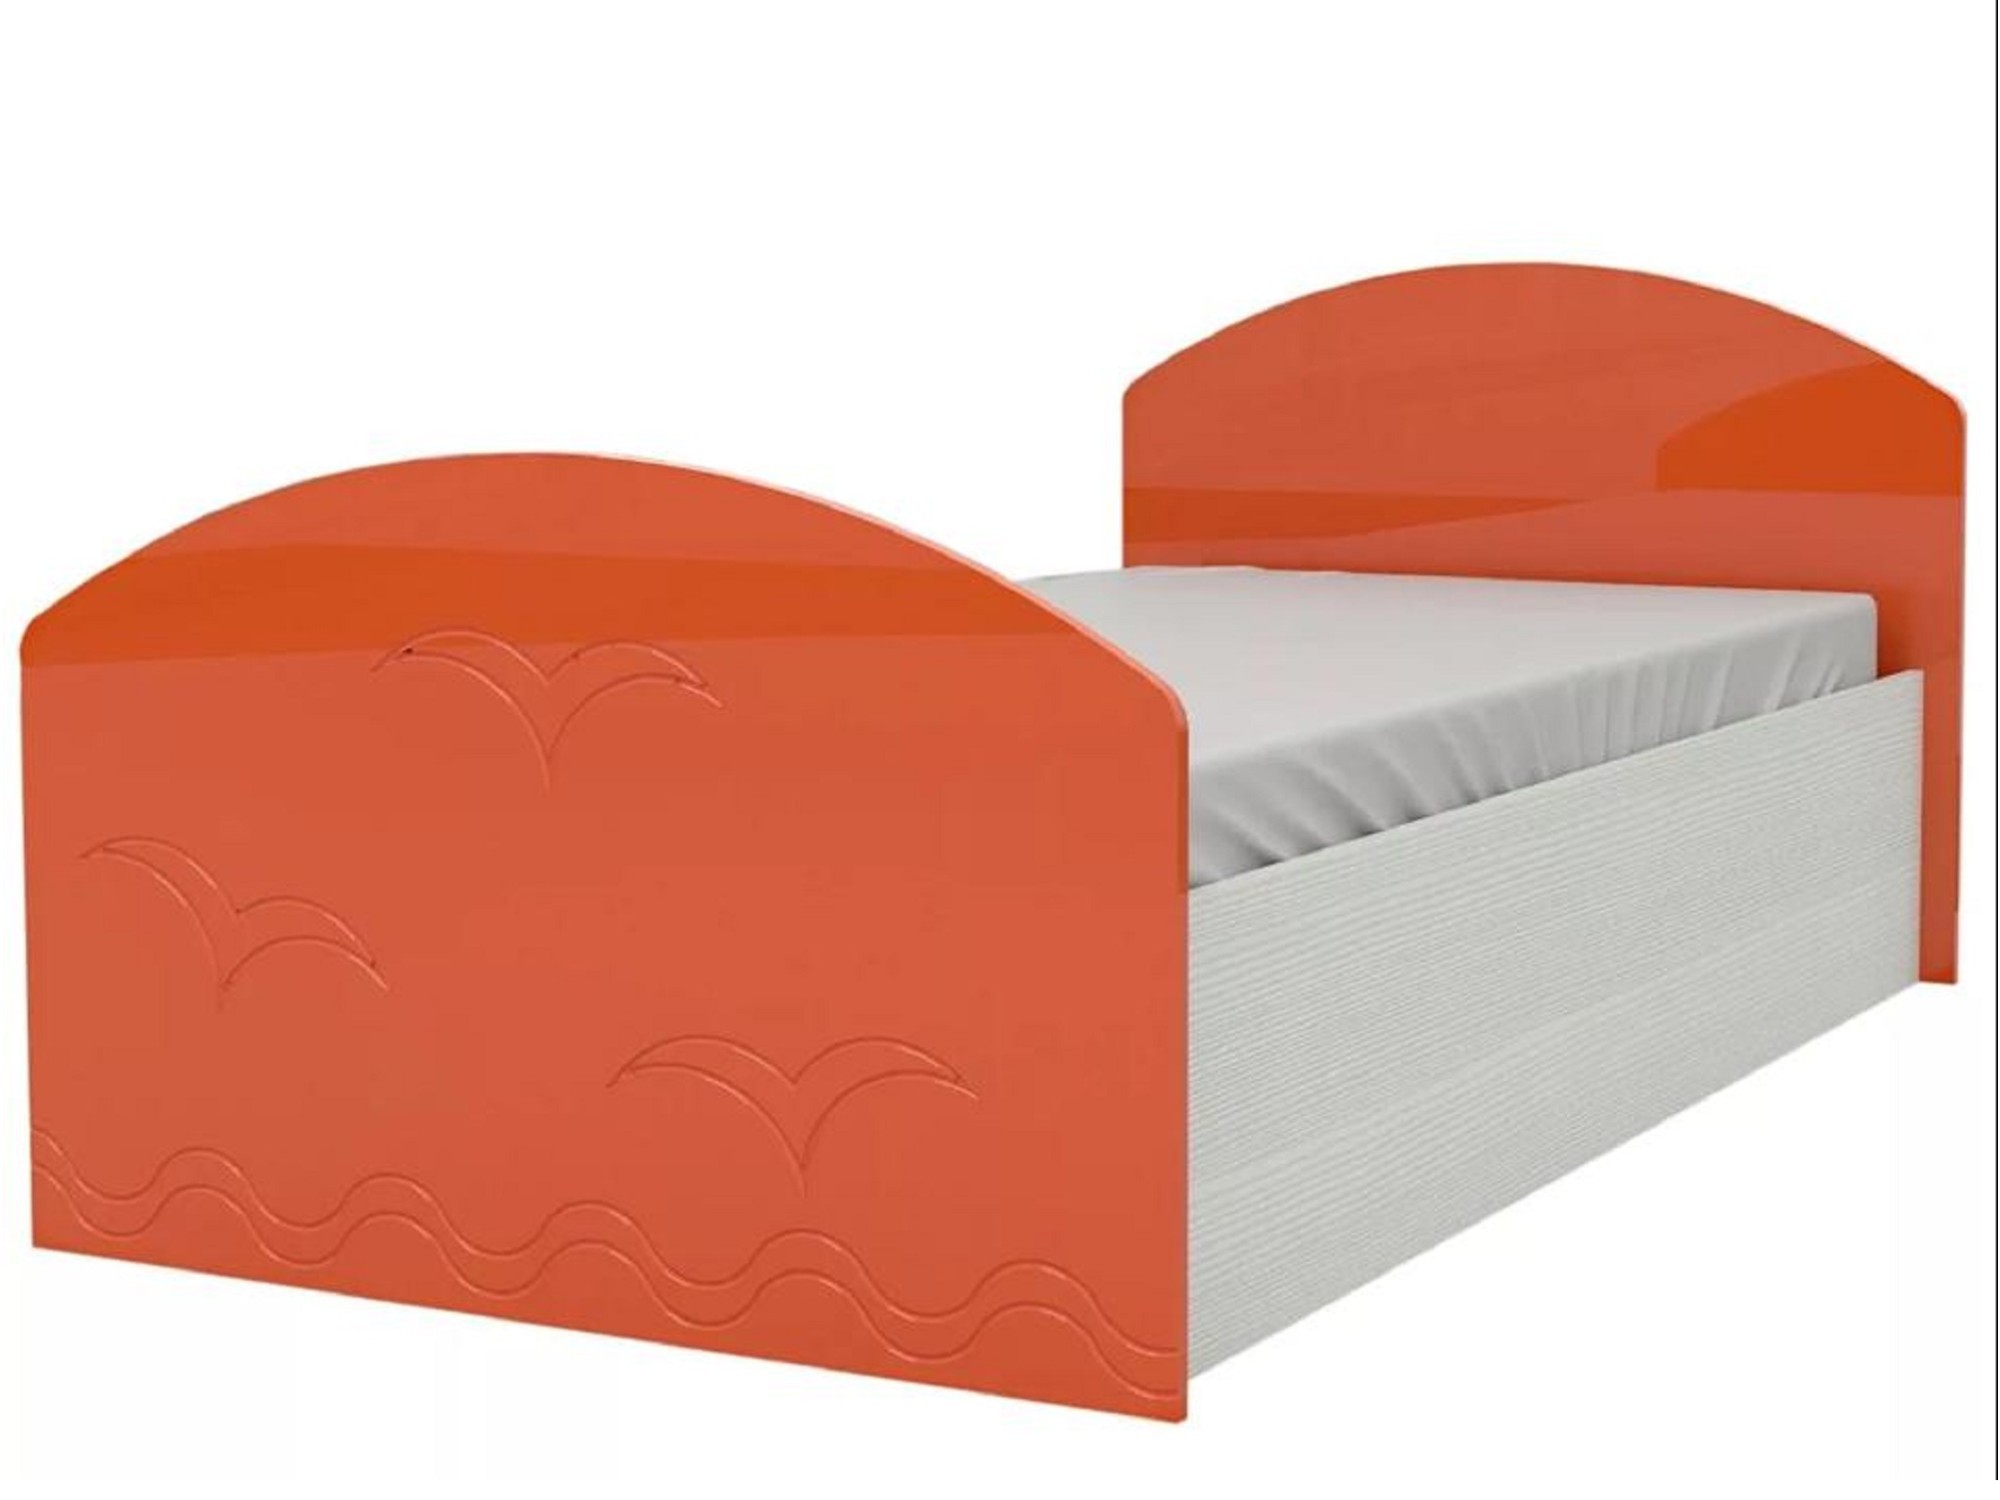 Юниор-2 Детская кровать 80, металлик (Оранжевый металлик, Дуб белёный) Дуб белёный, МДФ, ЛДСП детская кровать дельфин 80х200 синий металлик дуб белёный синий металлик мдф лдсп